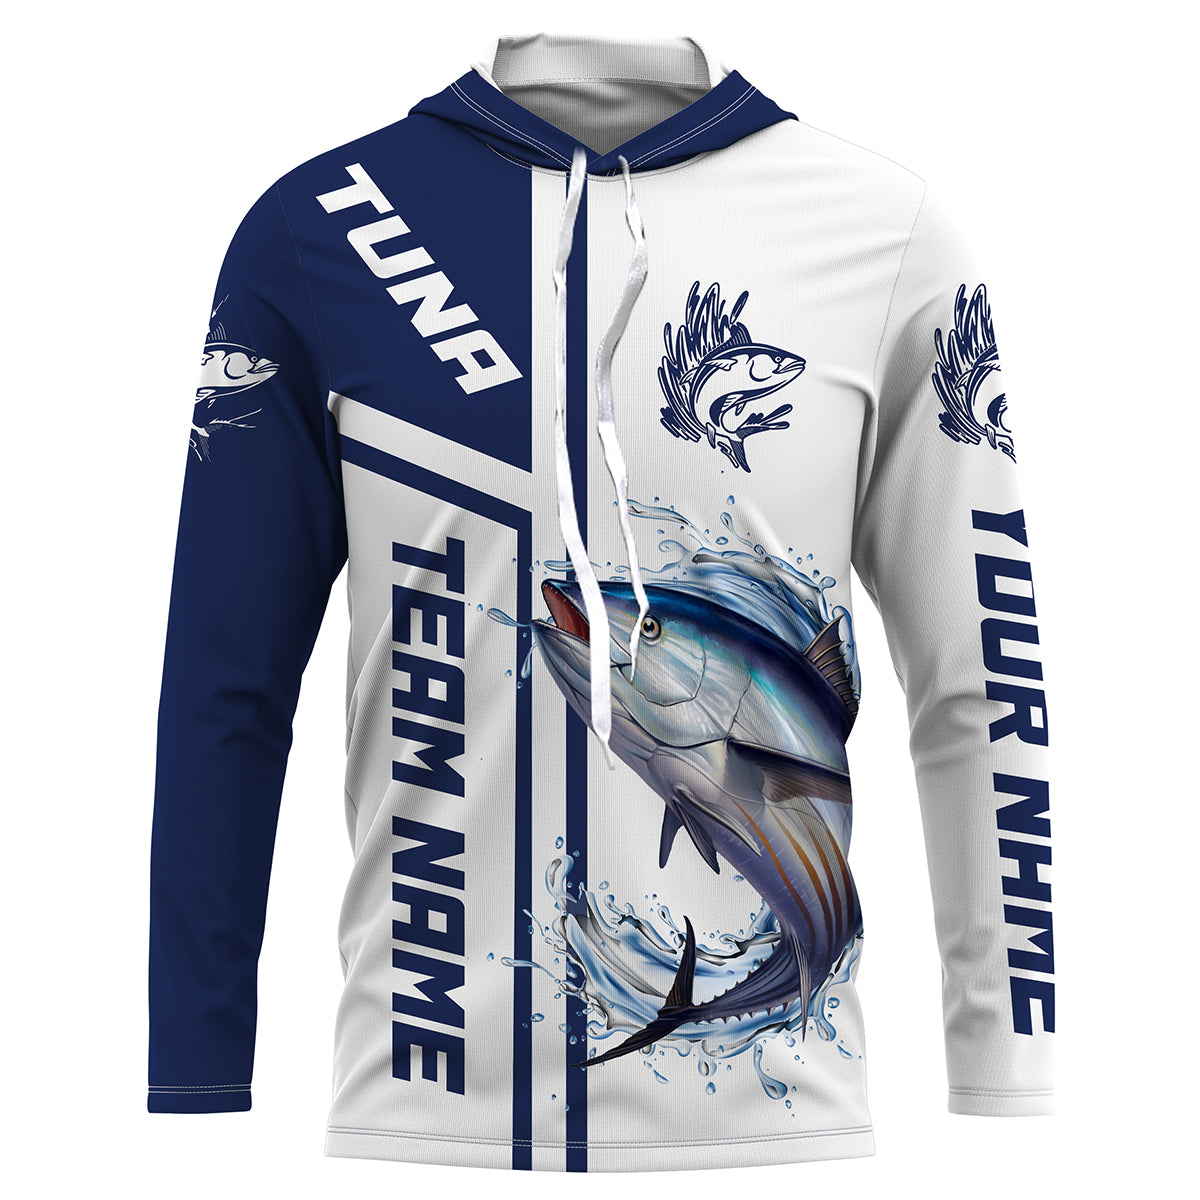 Zip up UV Protection Fishing Jersey Custom Logo Custom Team Name - China  Quarter Zip Fishing Shirt and Half Zip Fishing Shirt price